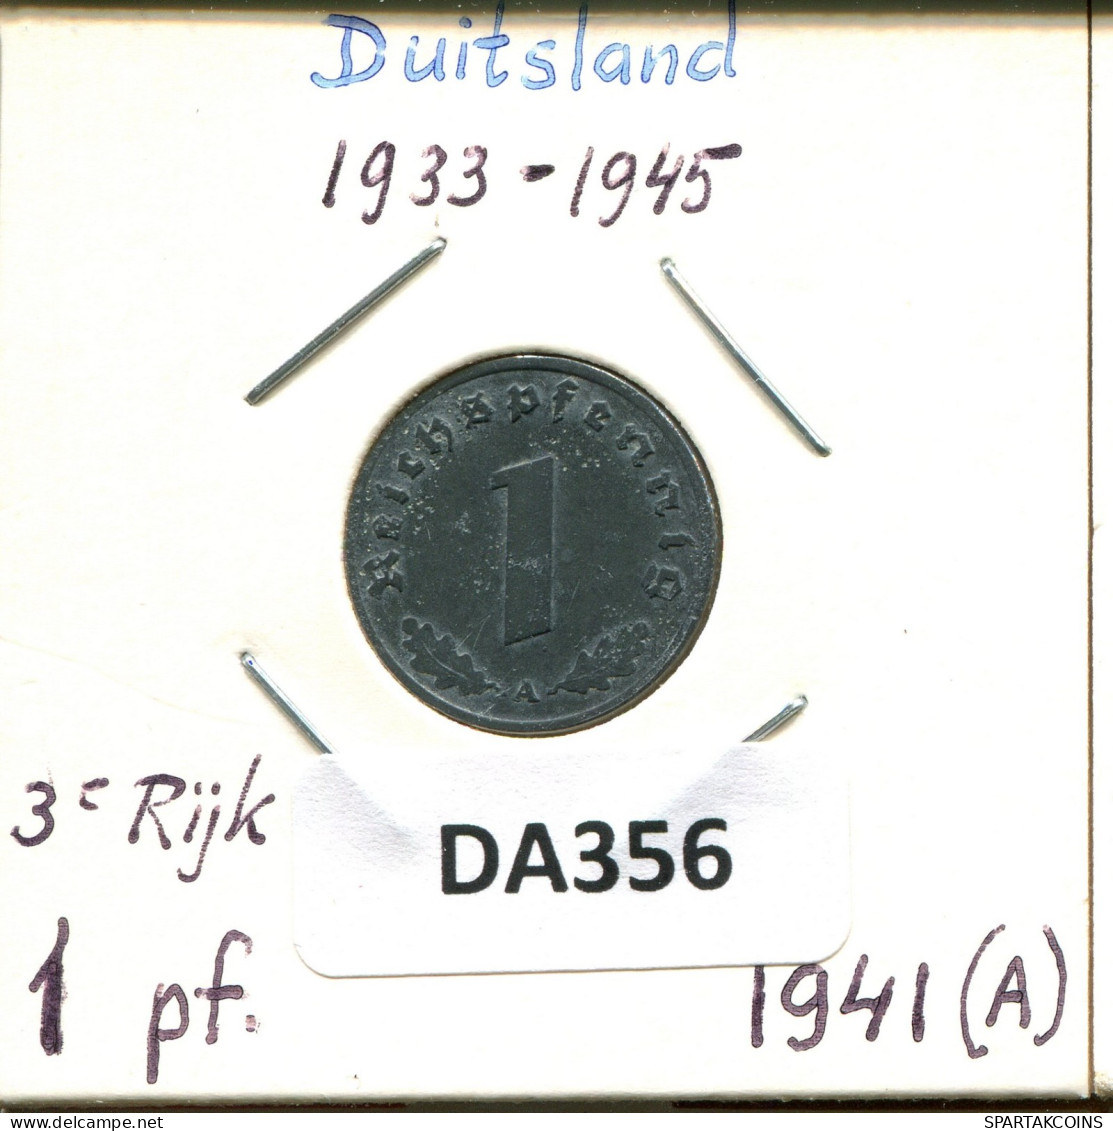 1 REICHSPFENNIG 1941 A DEUTSCHLAND Münze GERMANY #DA356.2.D.A - 1 Reichspfennig